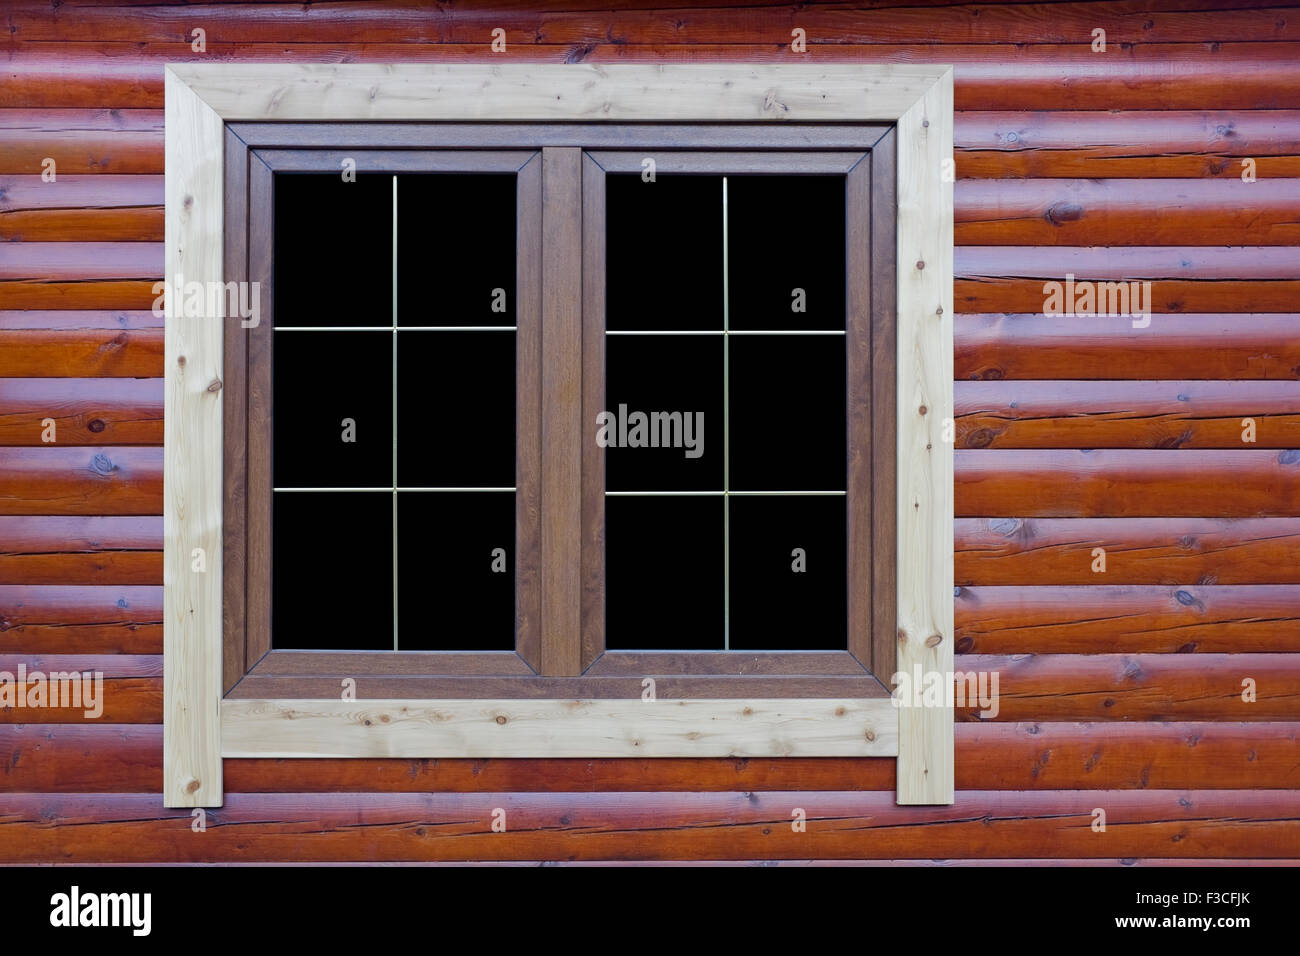 Moderno stile rustico- tettoia in legno a parete e finestra. Giornata di sole. Contiene isolato con elementi di rappezzatura Foto Stock